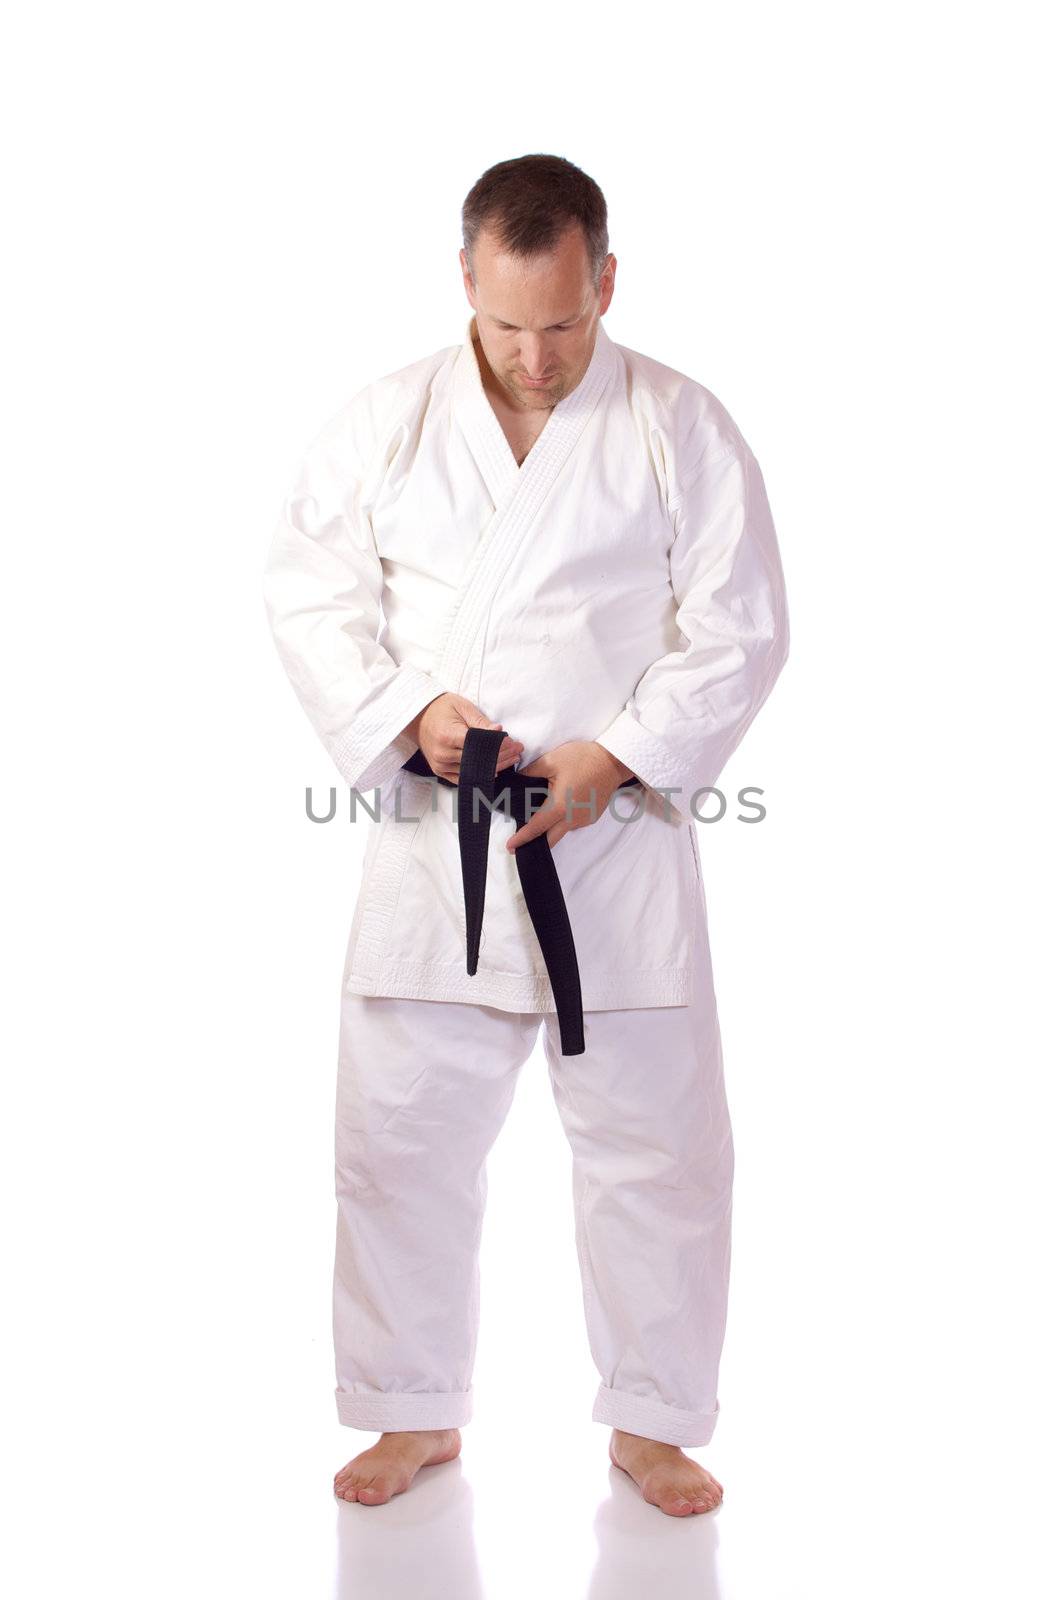 Karateka fastening his belt by Talanis